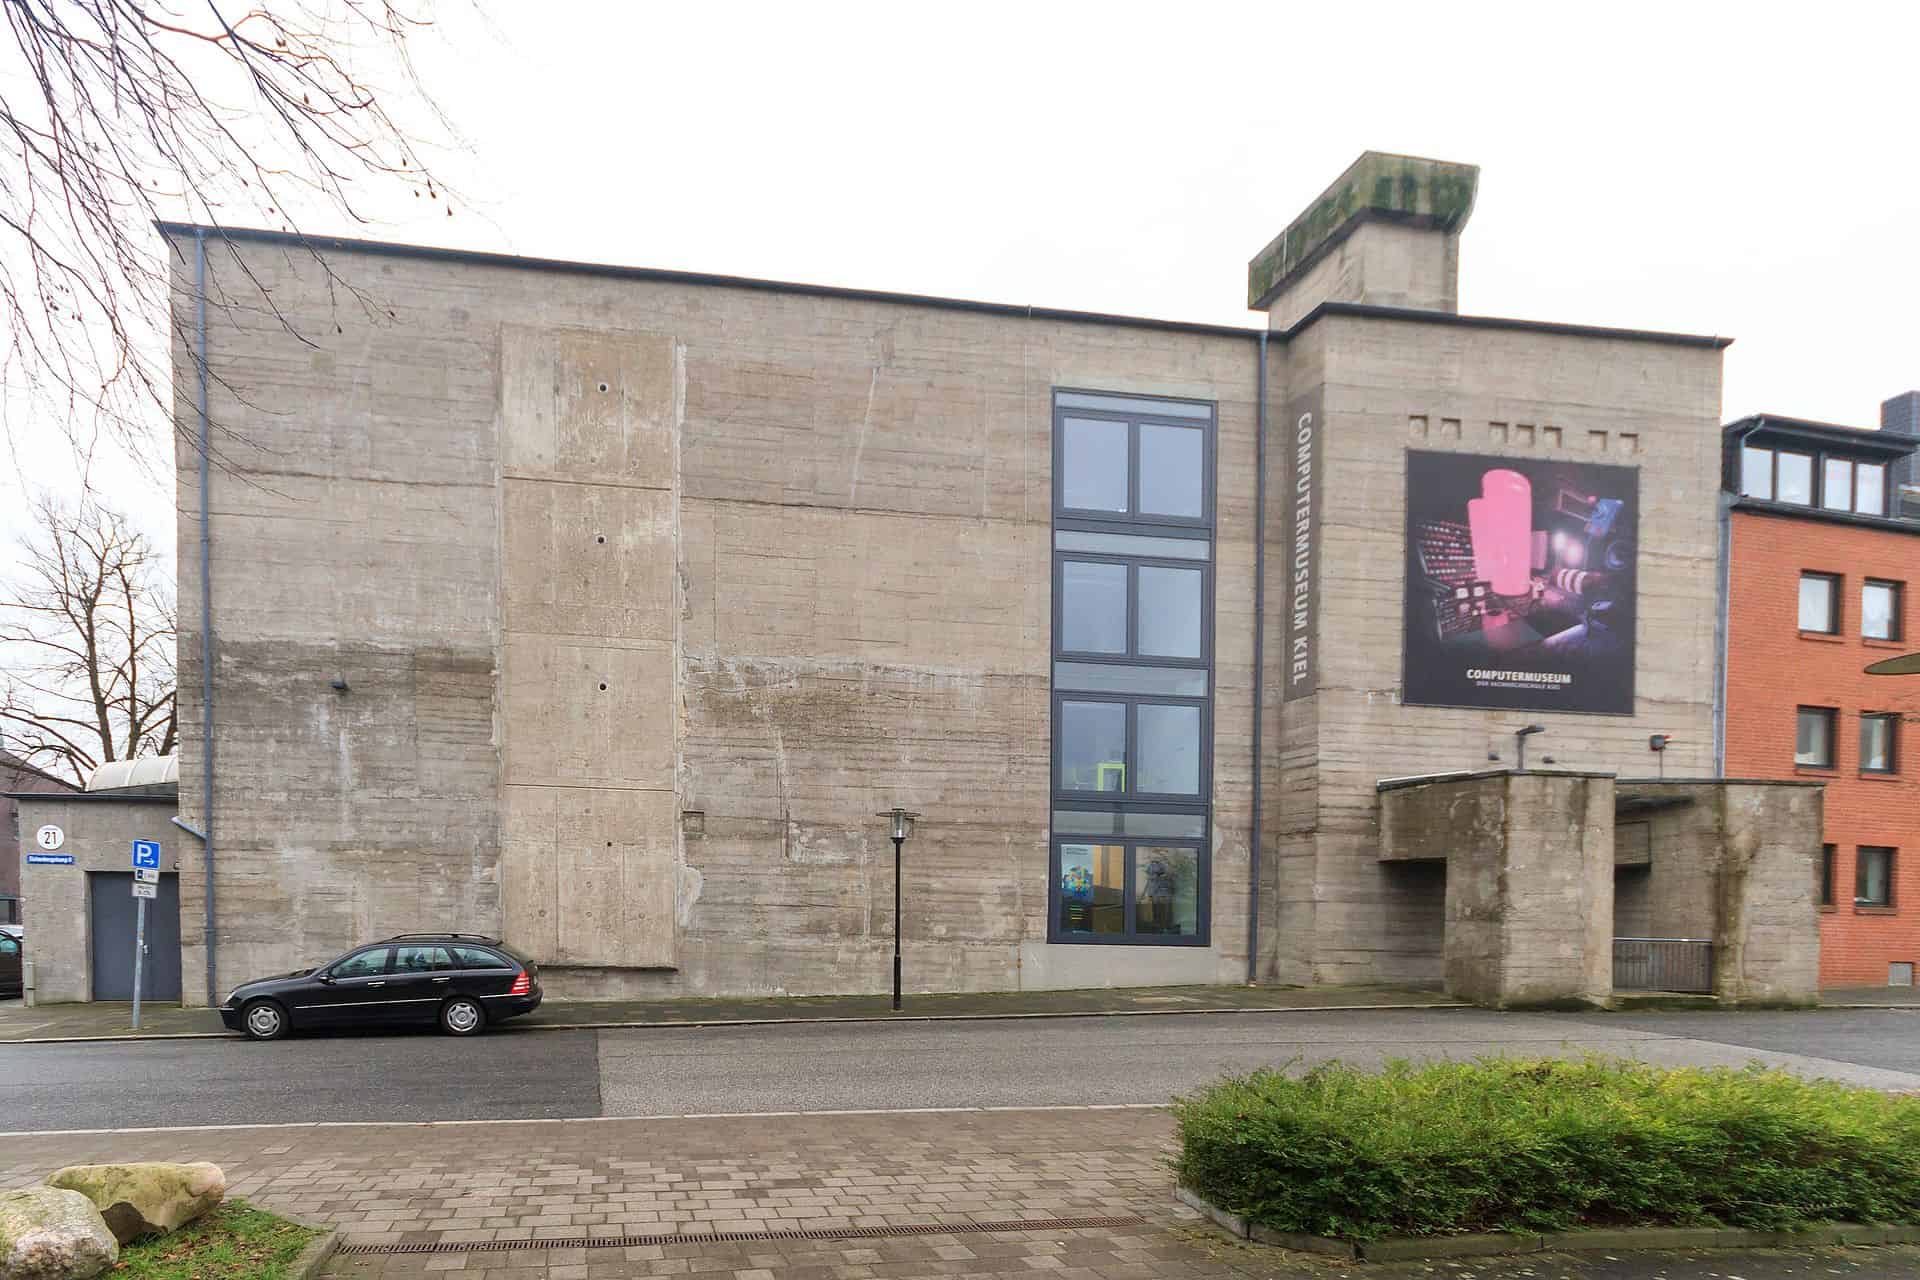 Computermuseum Kiel